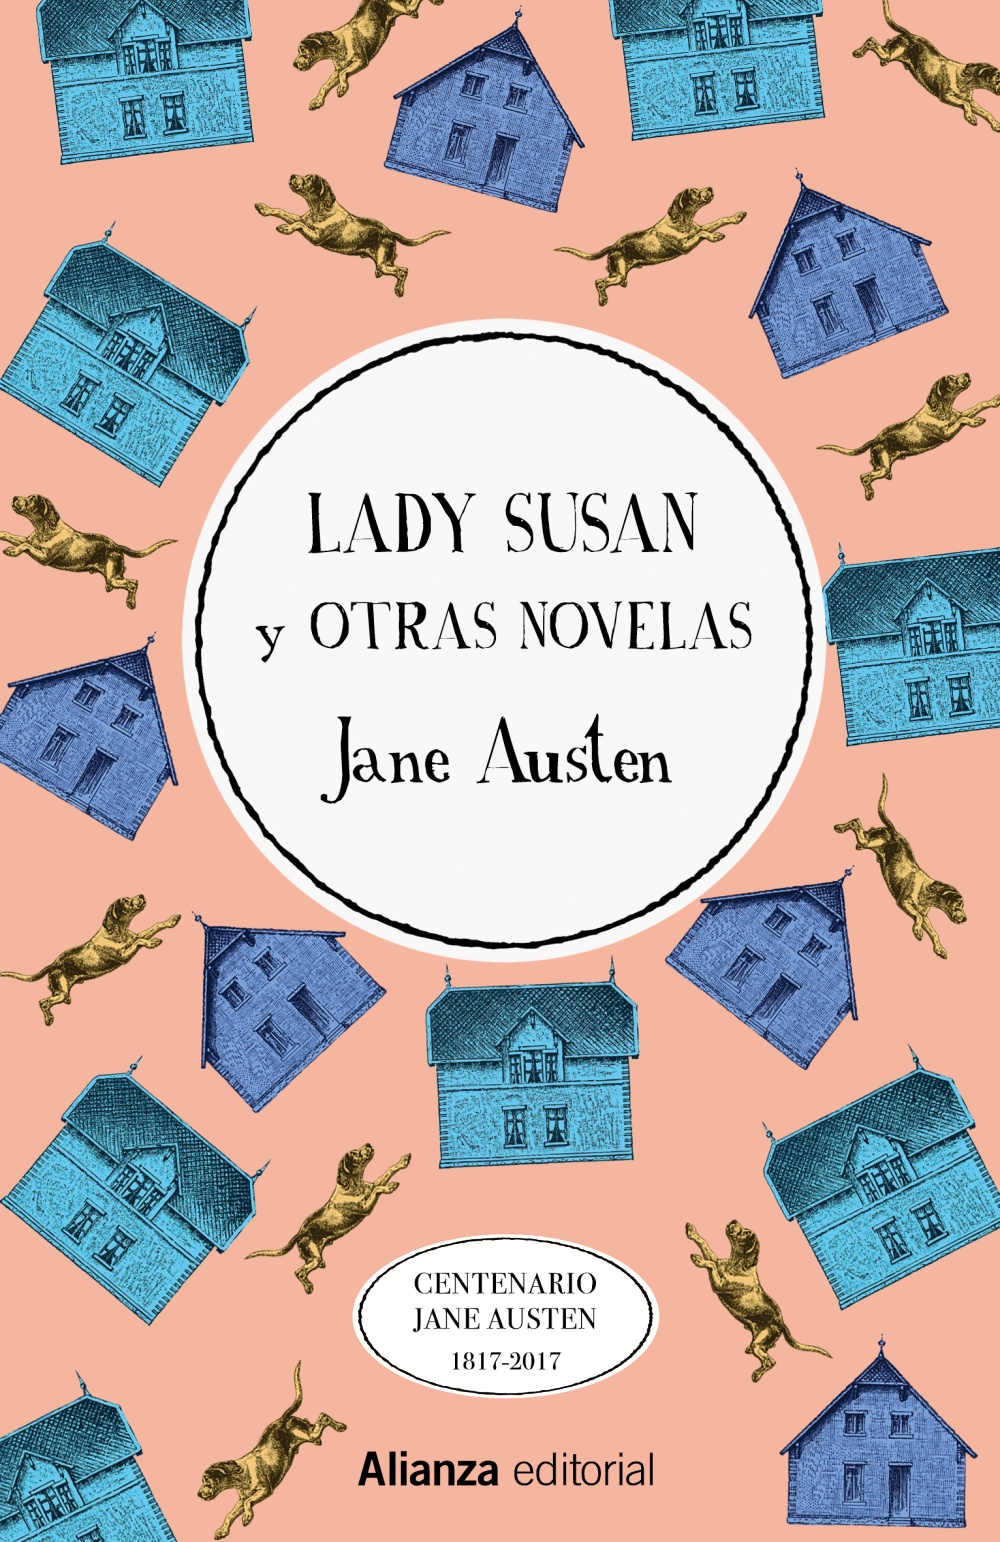 Lady Susan y otras novelas - Alianza Editorial